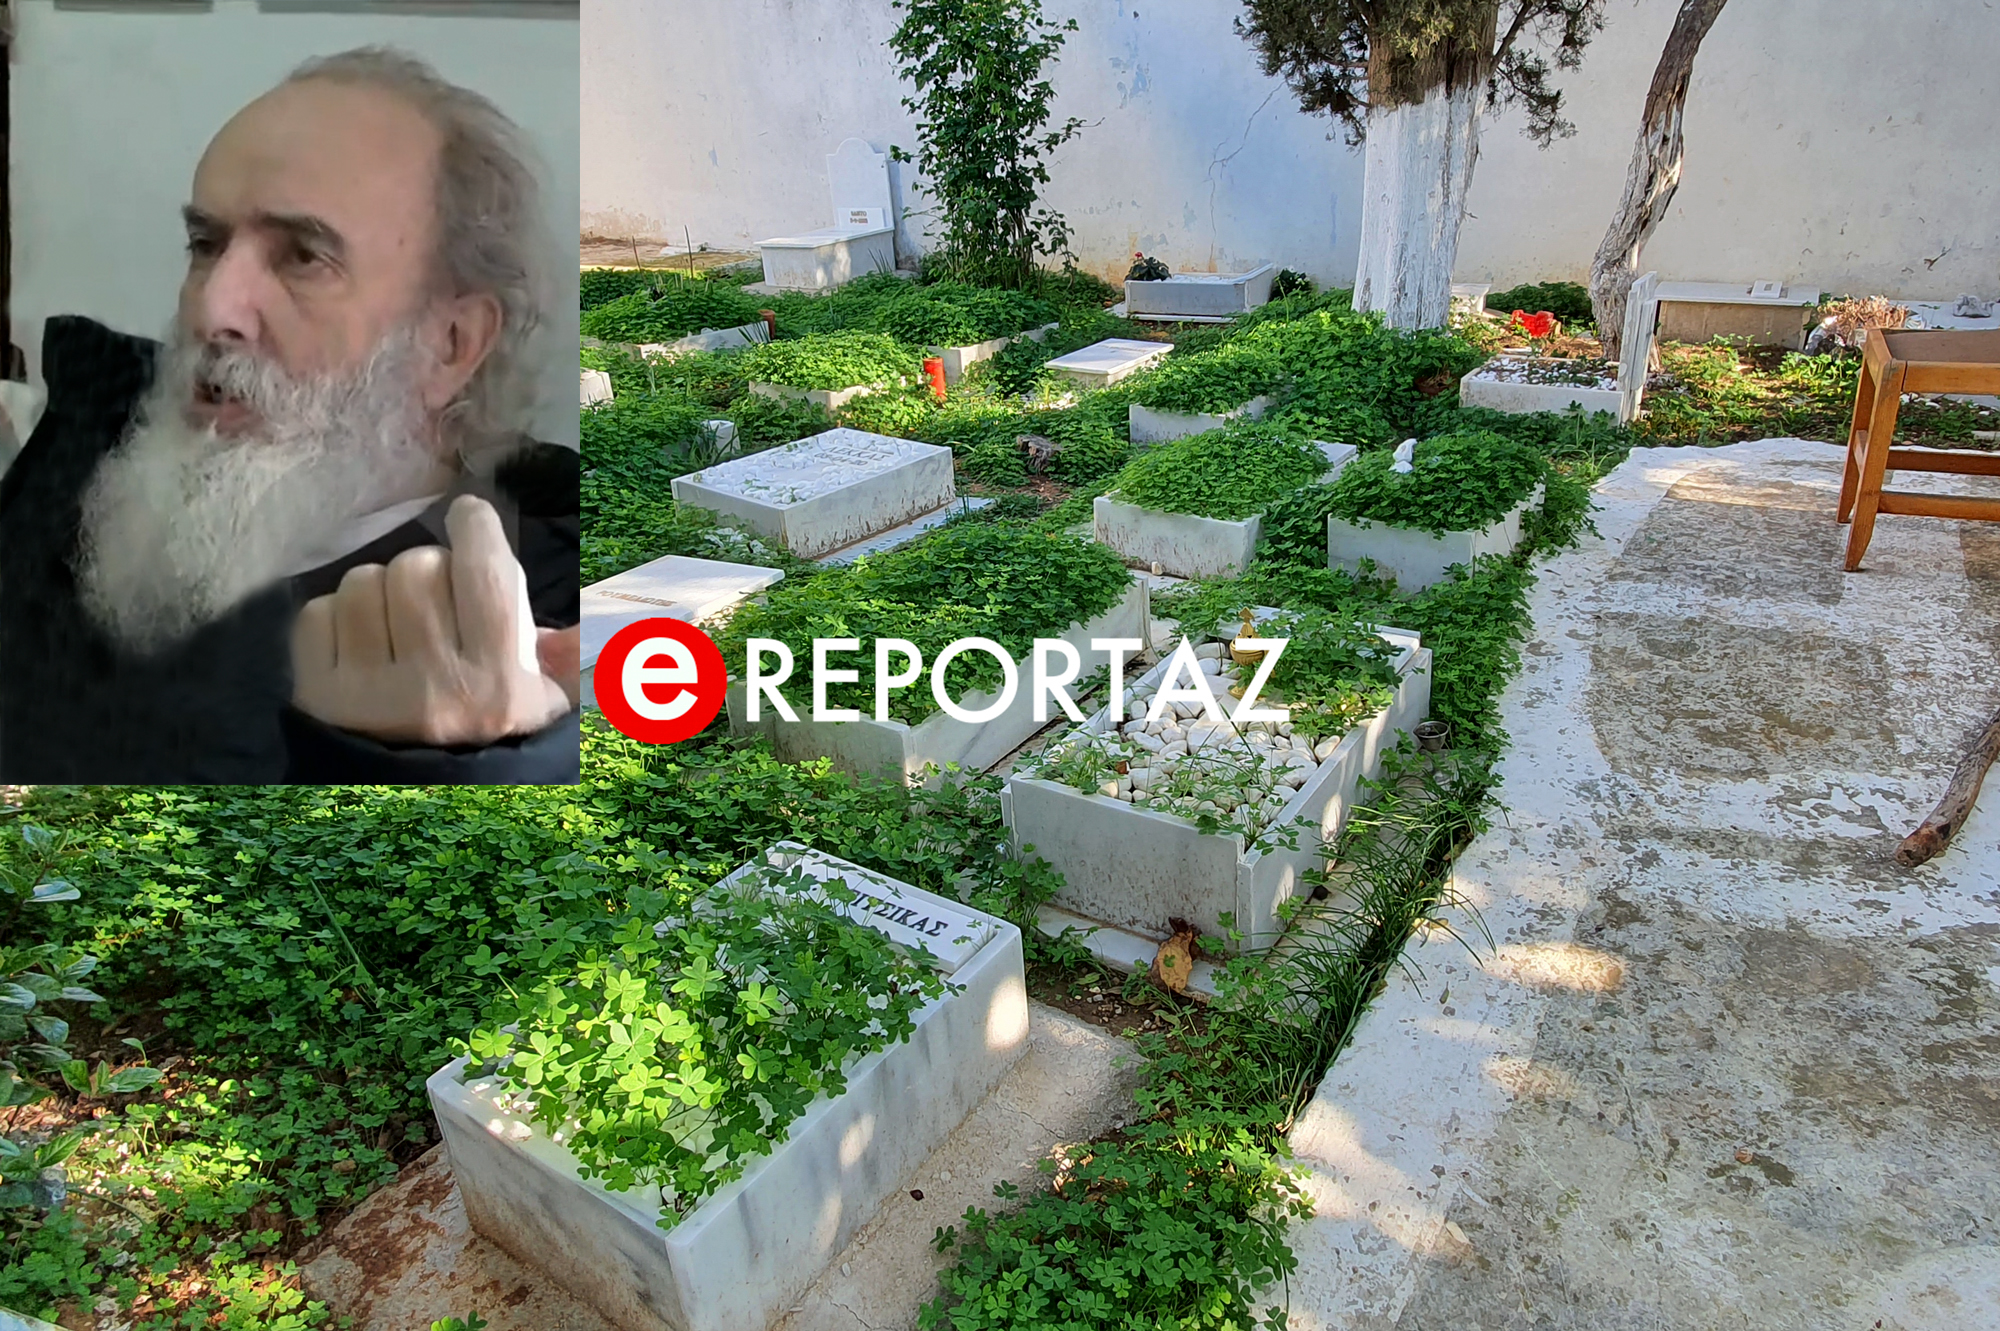 Ο ιερέας Δ. Ράικος μιλά στο ereportaz.gr για το παράνομο νεκροταφείο στα Καλύβια μετά την εισαγγελική παρέμβαση